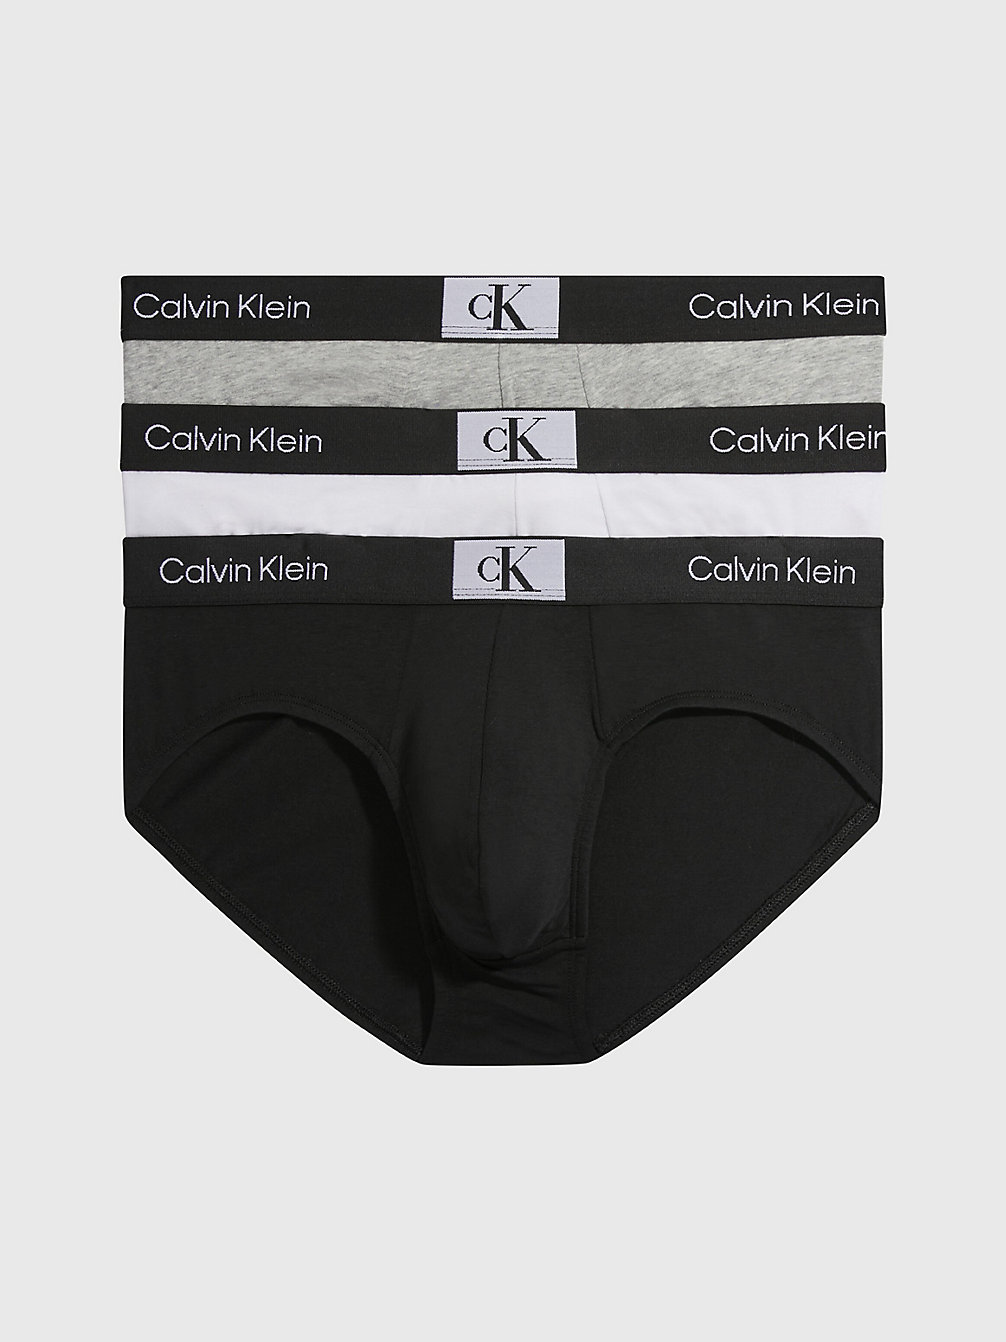 BLACK/WHITE/GREY HEATHER > 3 Pack Briefs - Ck96 > undefined женщины - Calvin Klein